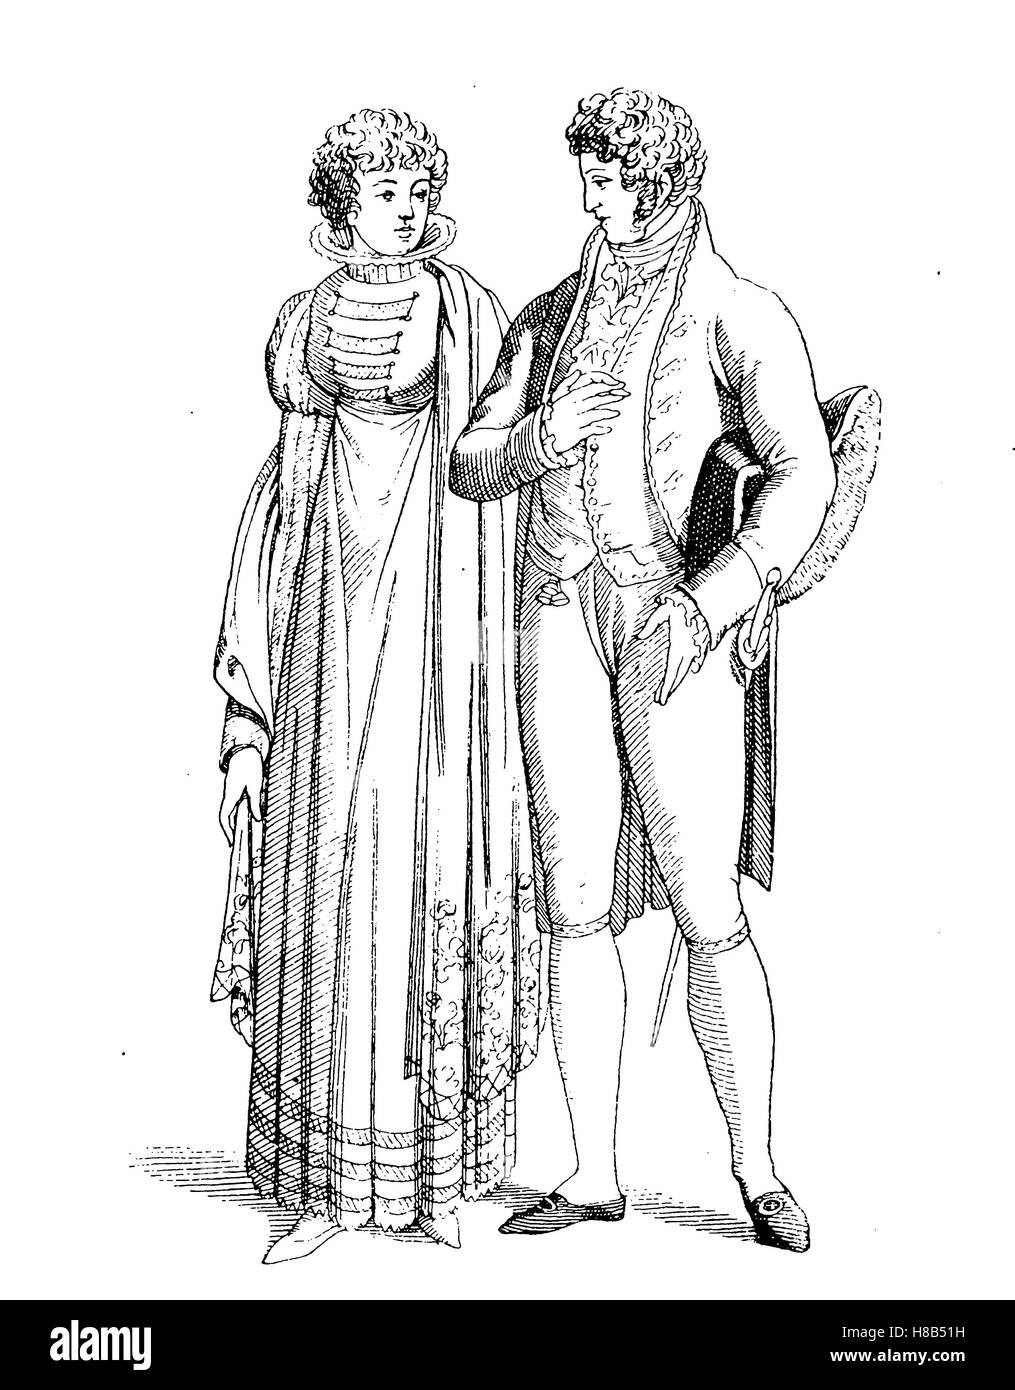 L'homme et dame, robe de cour de 1810, la France, l'histoire de la mode, des costumes story Banque D'Images